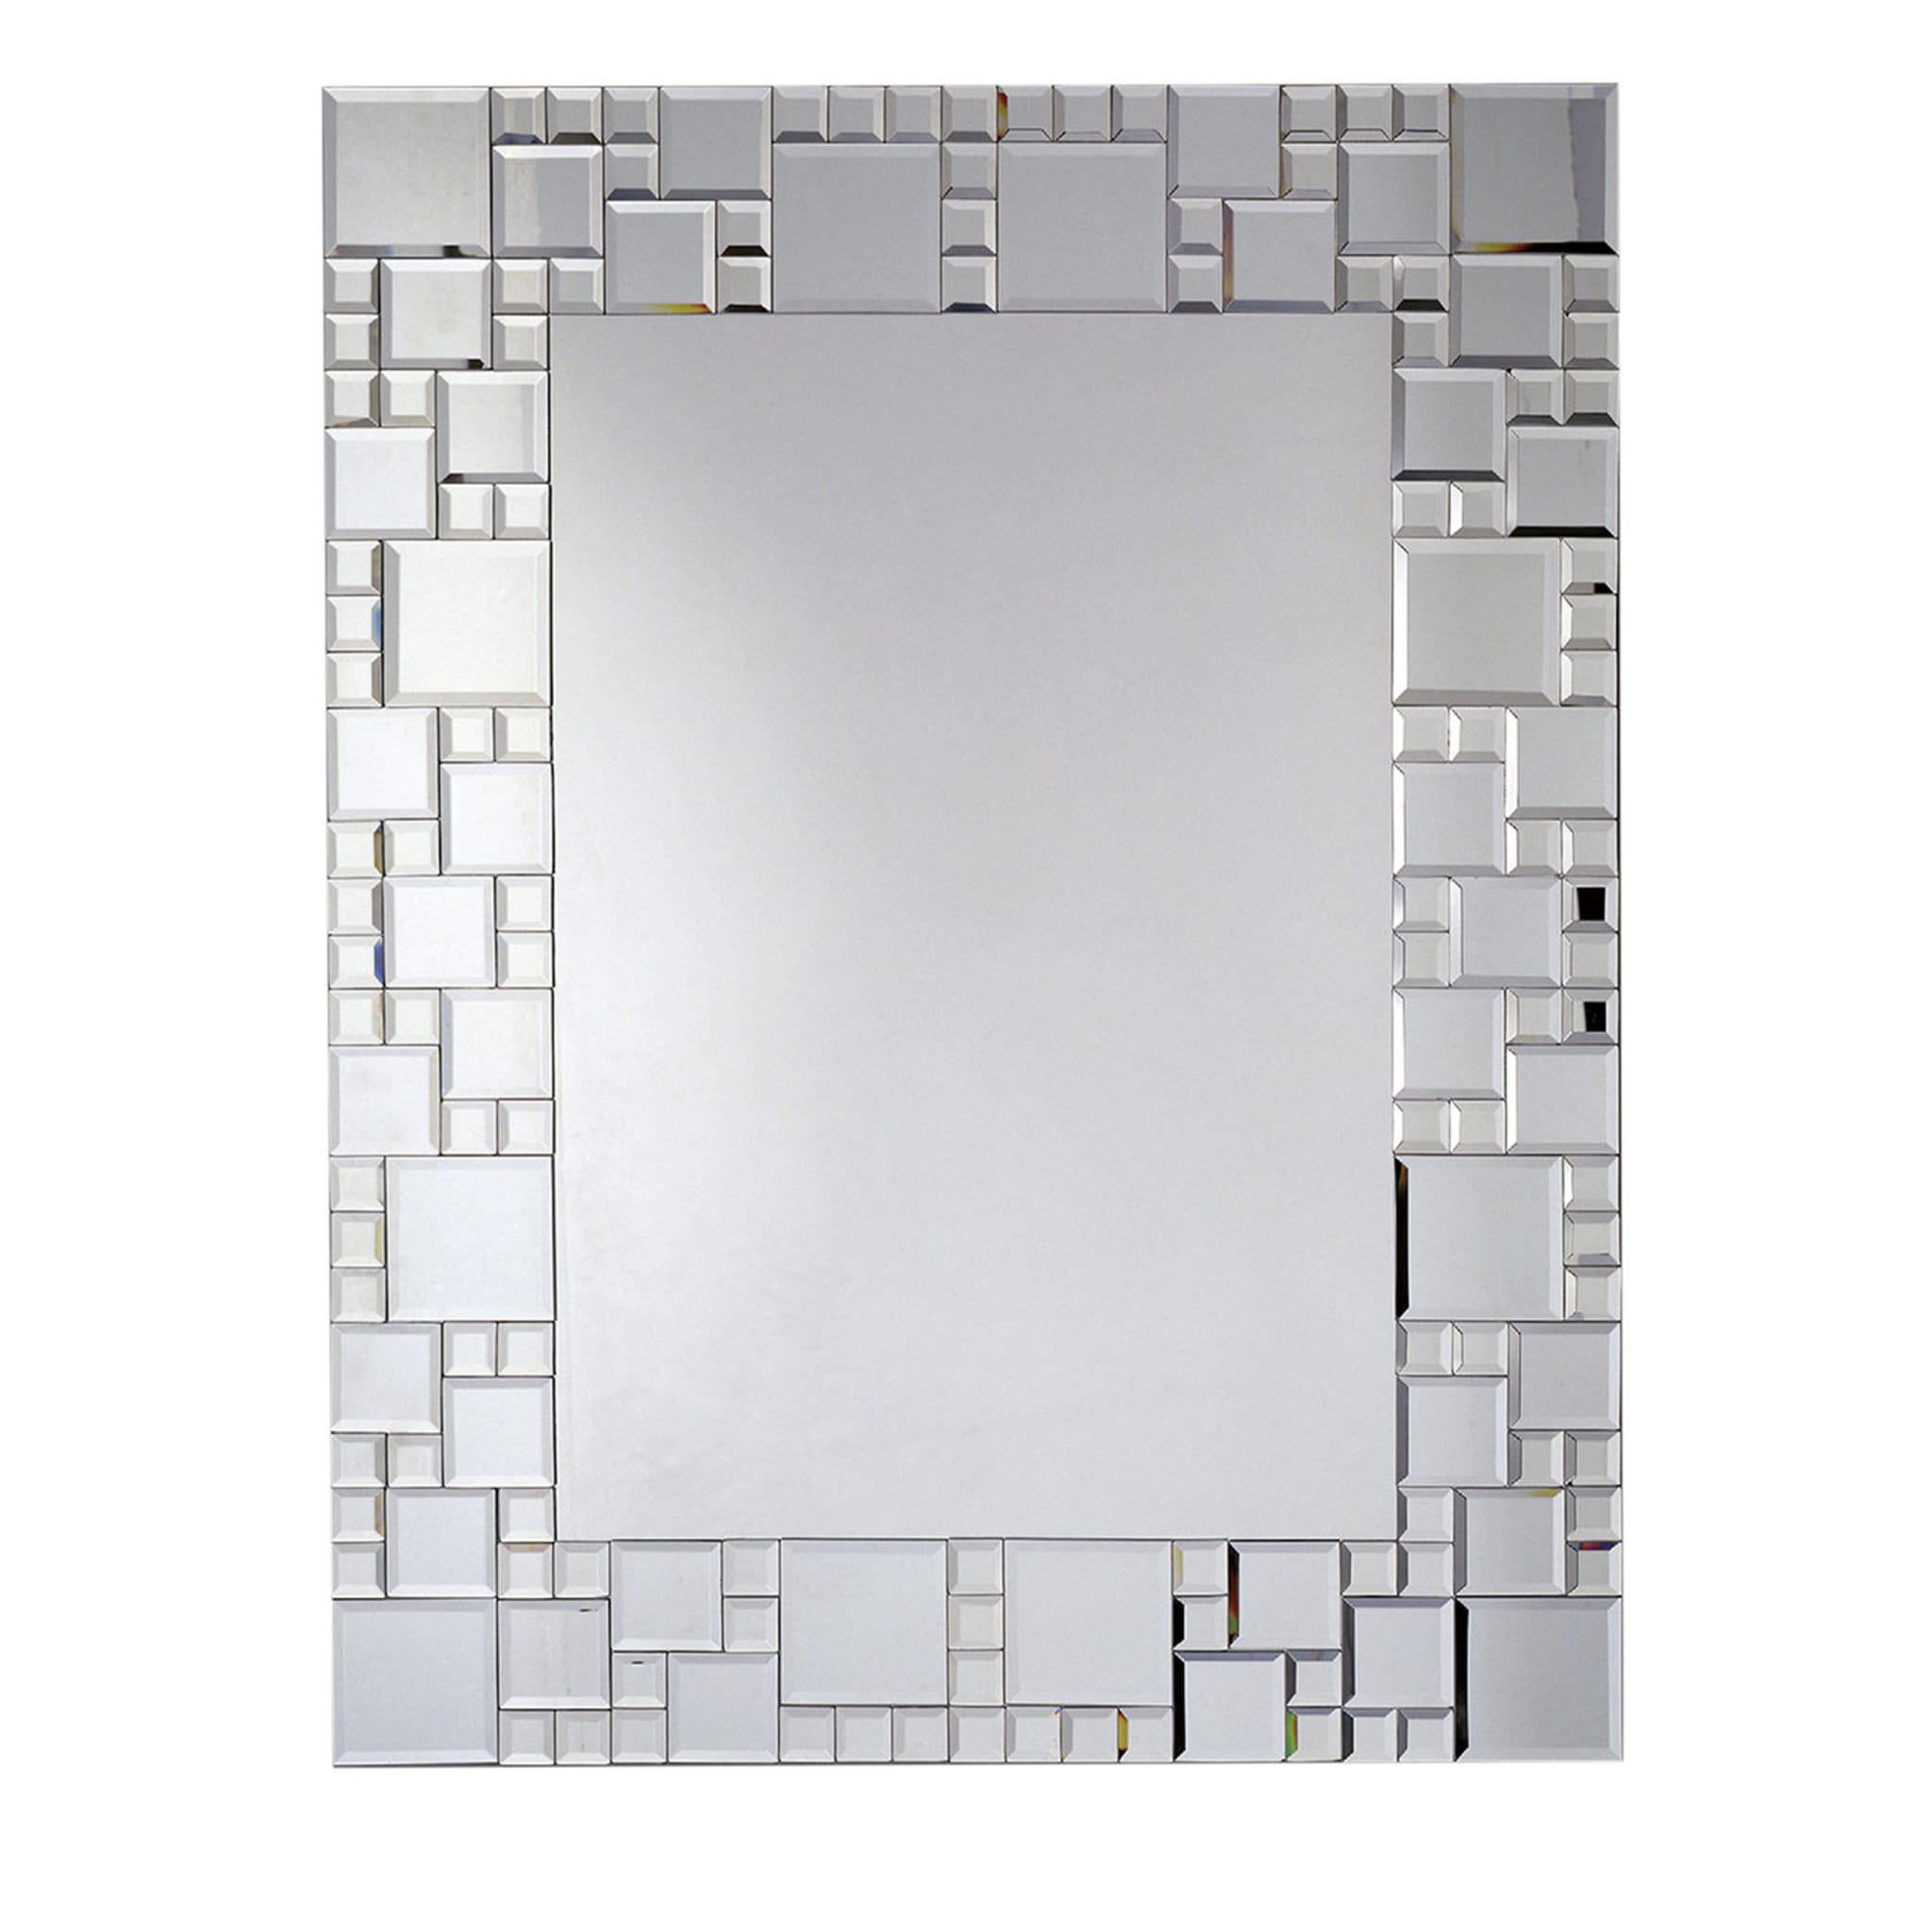 Quadrati Contemporary Mirror - Main view